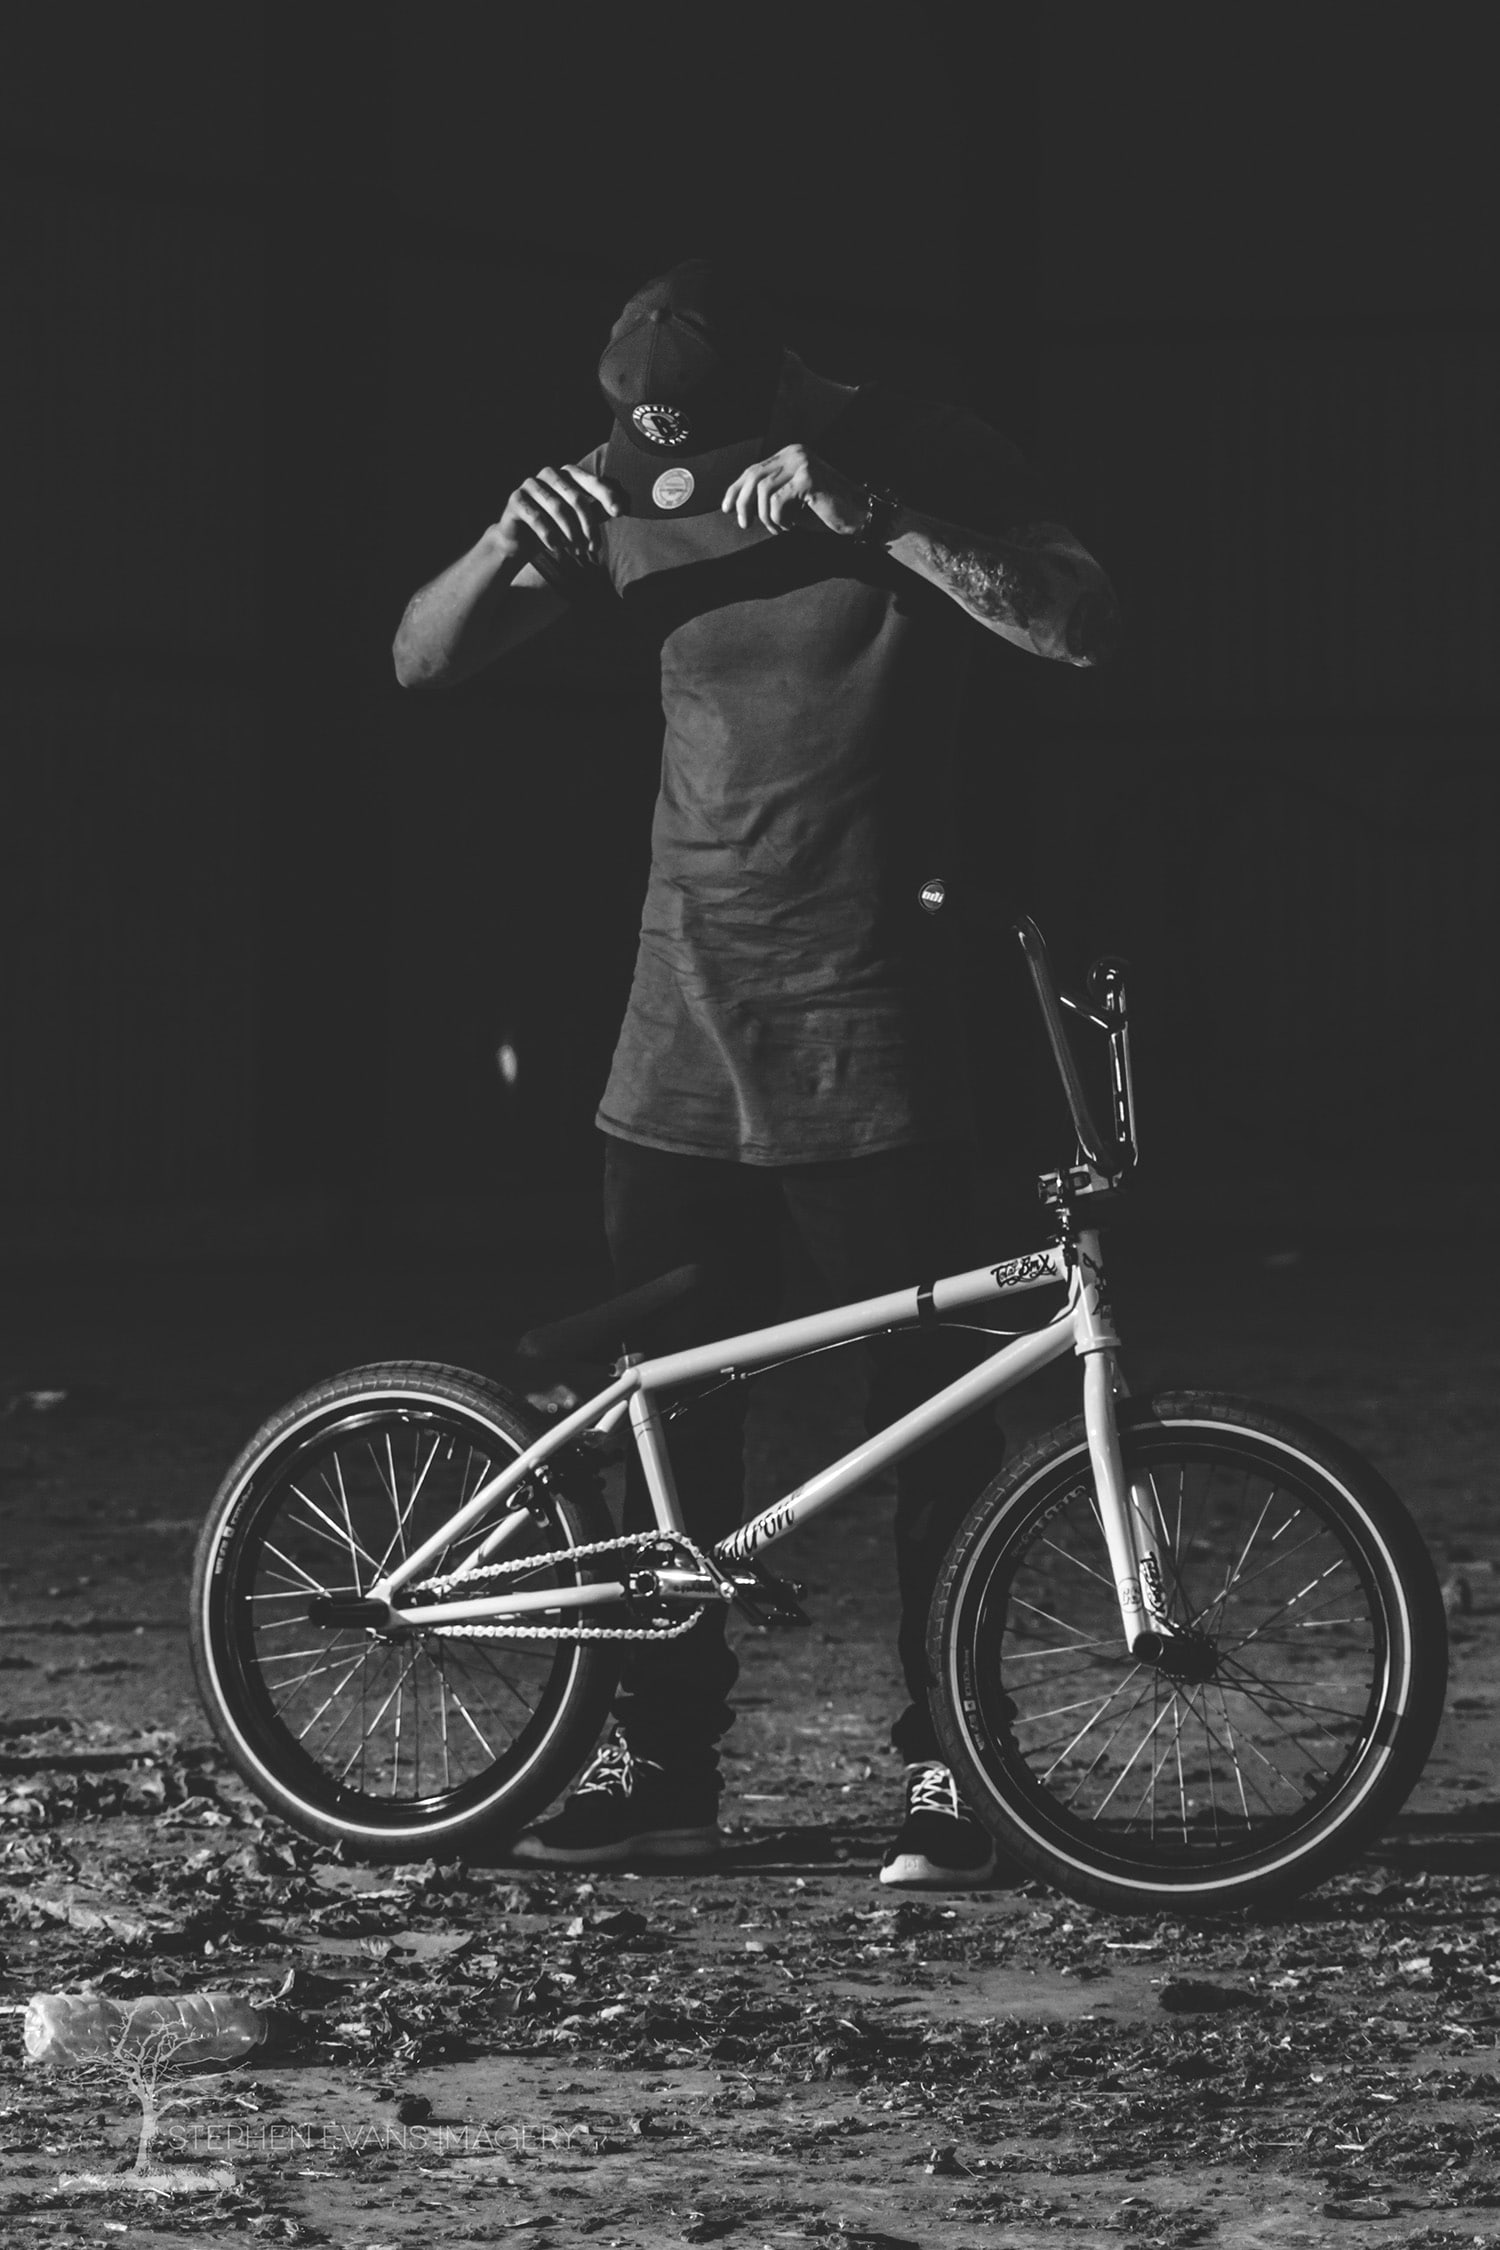 Jack posing with BMX bike